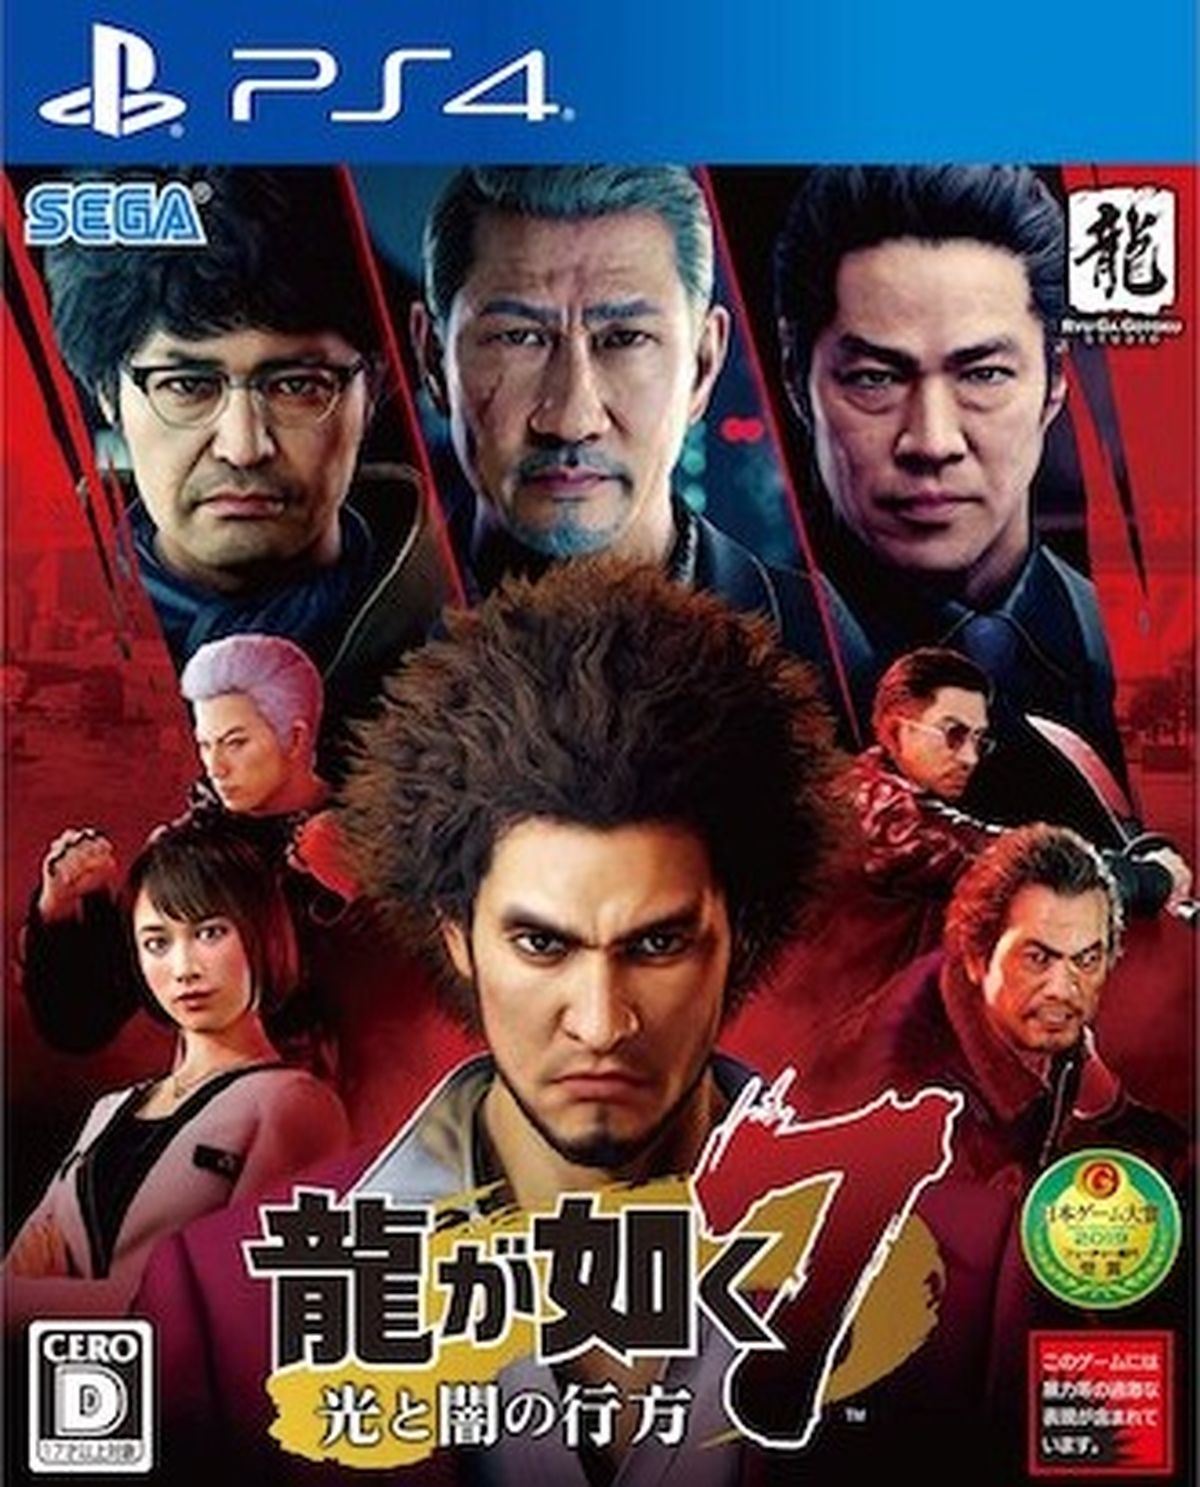 Yakuza Kiwami - PlayStation 4 Steelbook Edition : Yakuza Kiwami